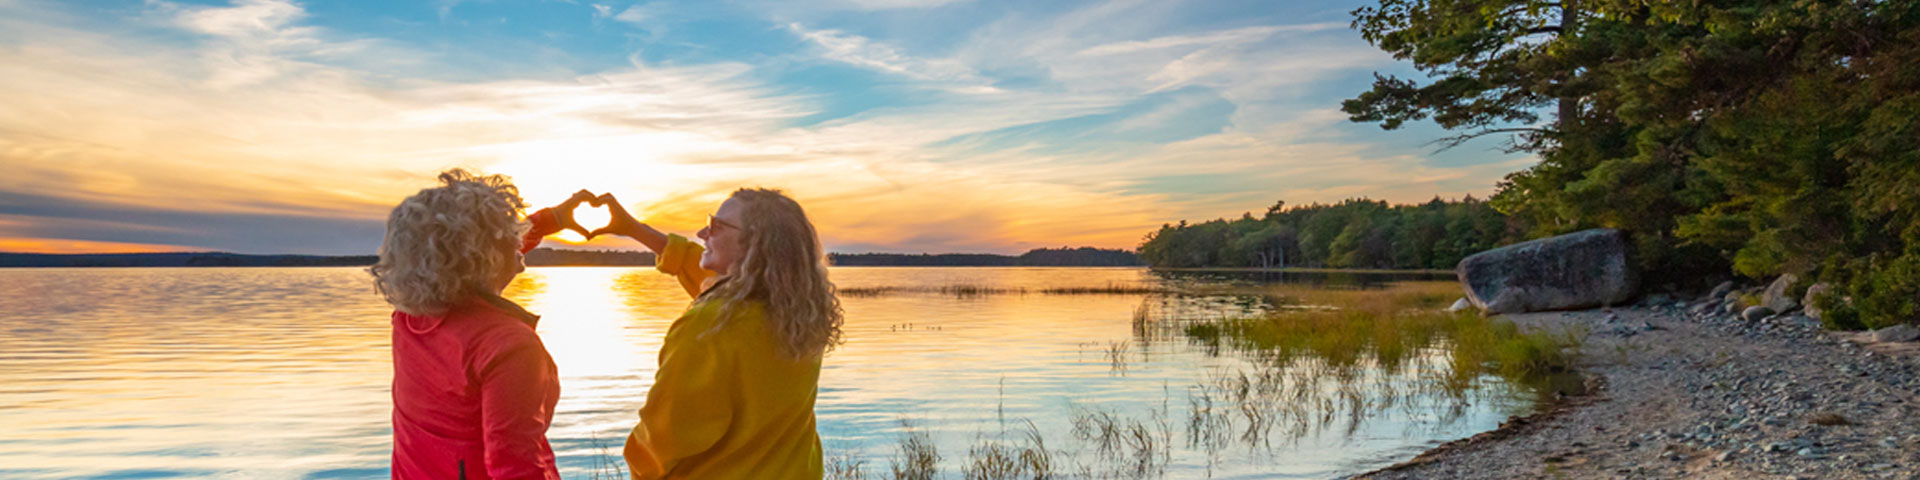 Un coucher de soleil au bord de l’eau et deux femmes formant un cœur avec leurs mains. 